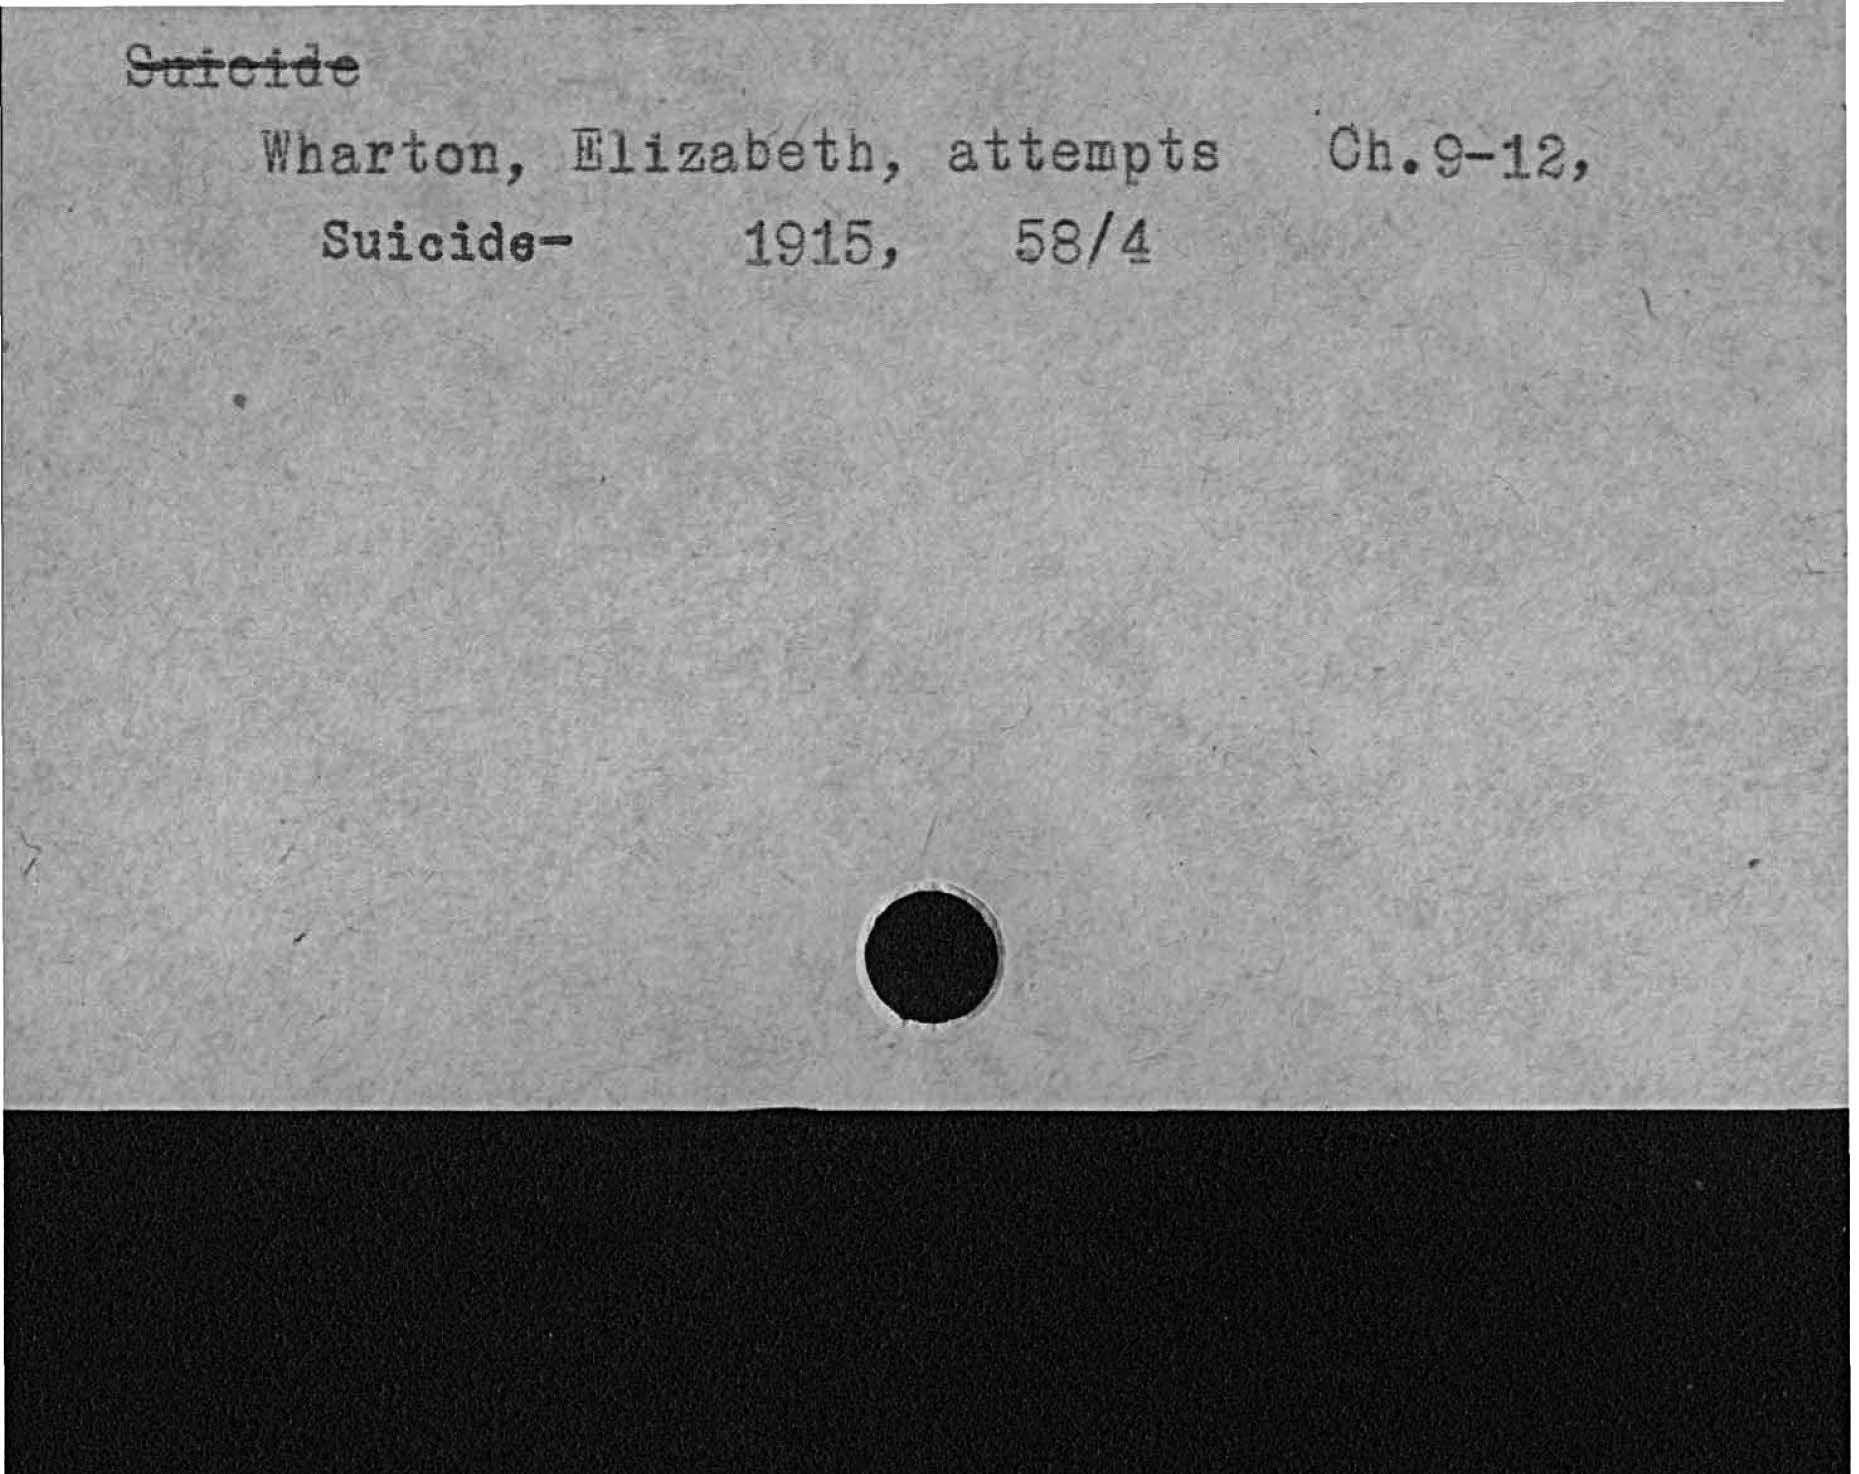 Wharton Elizabeth attempts Oh. 9- 12,Suicide- 1915, 8/ 4